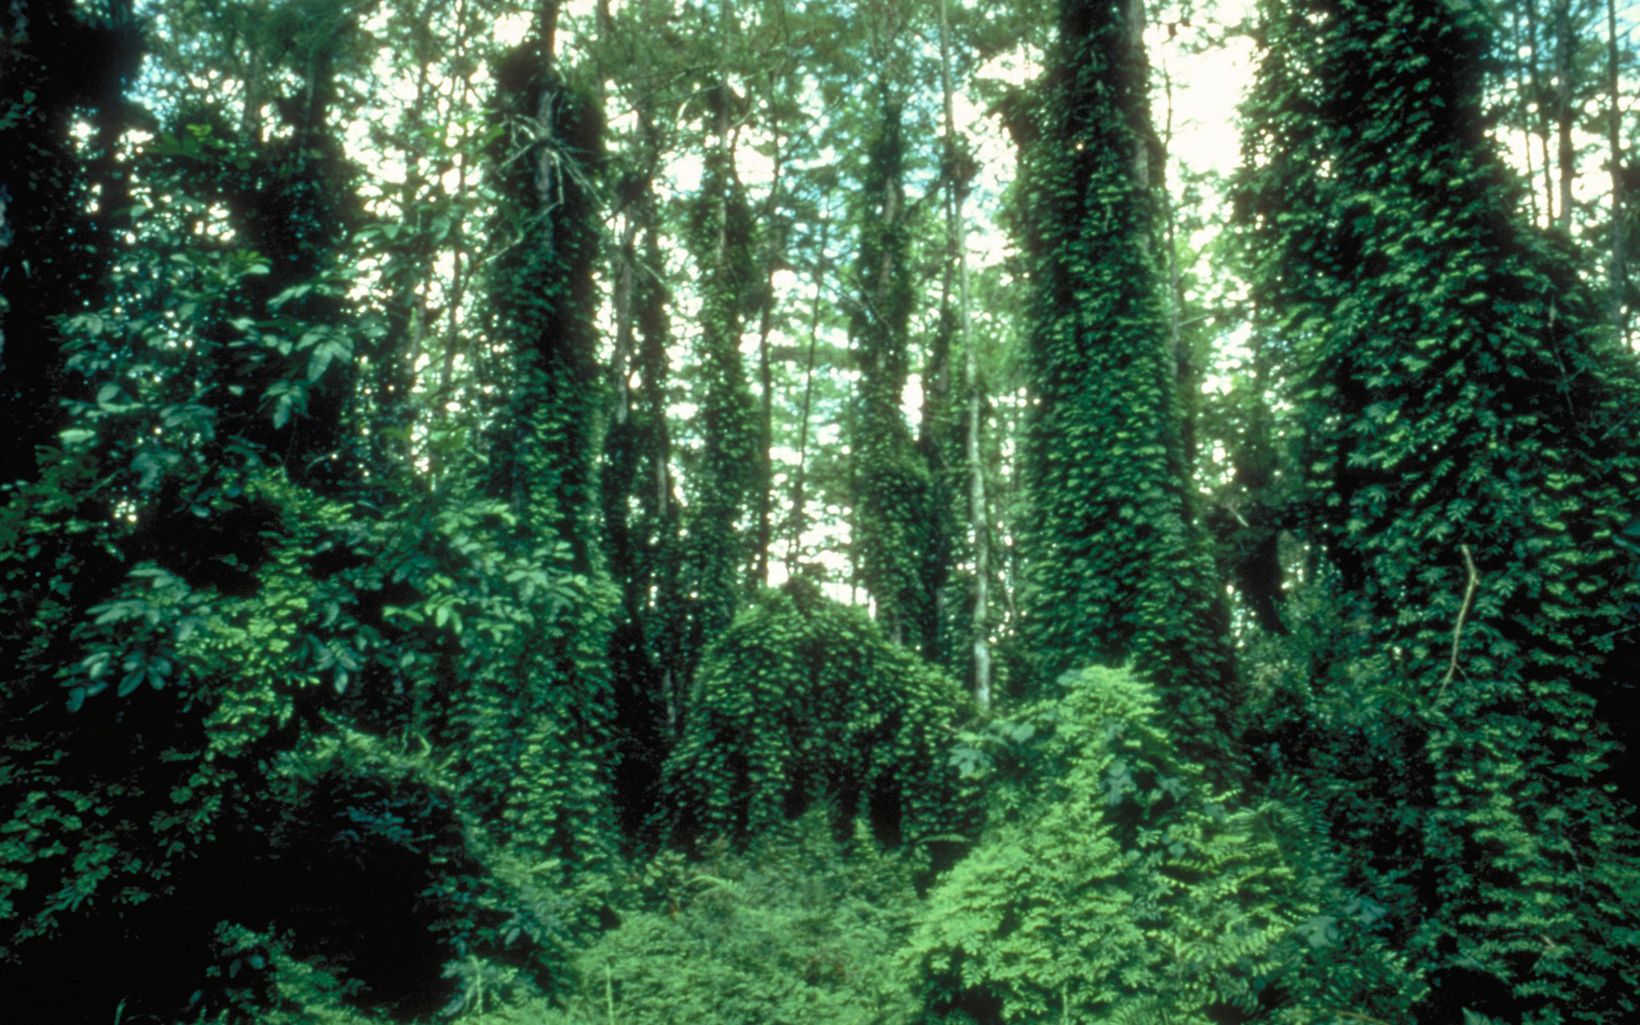 Lygodium El helecho trepador del Viejo Mundo es una gran amenaza para las plantas y animales nativos de Florida. Sus frondas crecen hasta los 125 pies, sofocando todo debajo de ellas. © D. Gordon/TNC